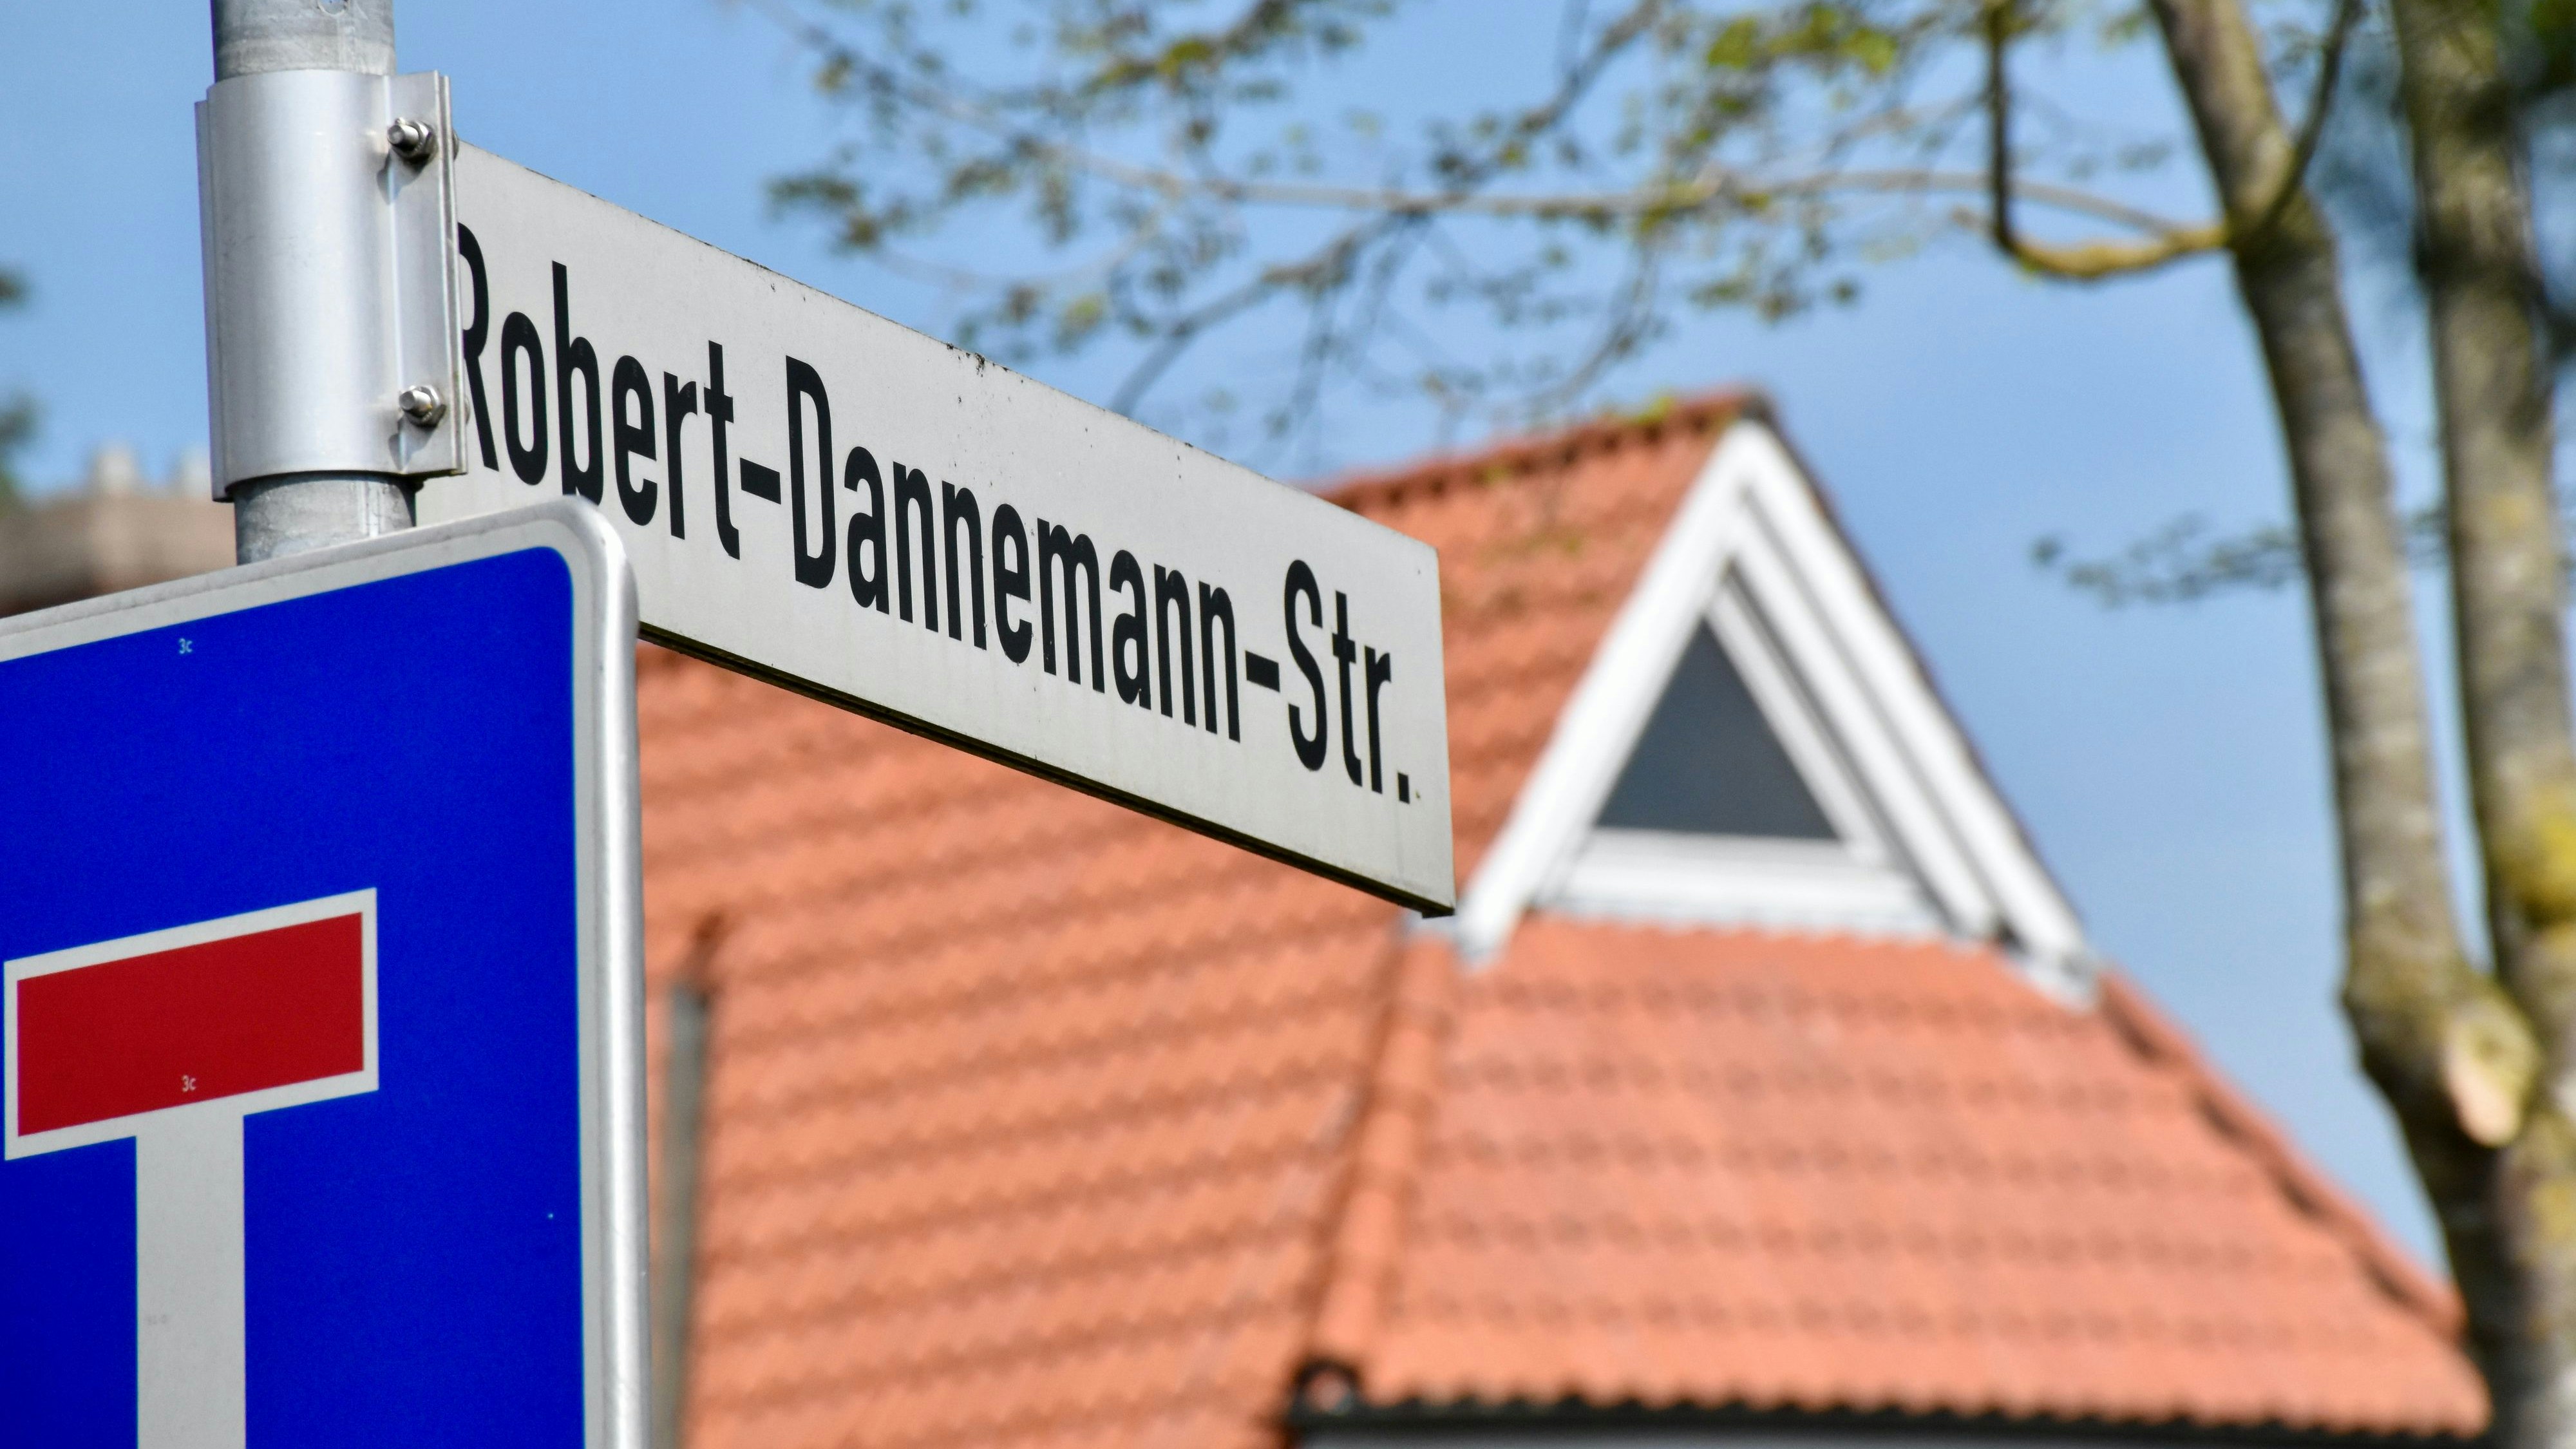 Wo geht es lang? In Wardenburg bleibt der Robert-Dannemann-Weg, mit Einschränkungen, erhalten. In Vechta beginnt jetzt die politische Debatte um den Umgang mit dem zweifelhaften Namensgeber. Foto: Berg